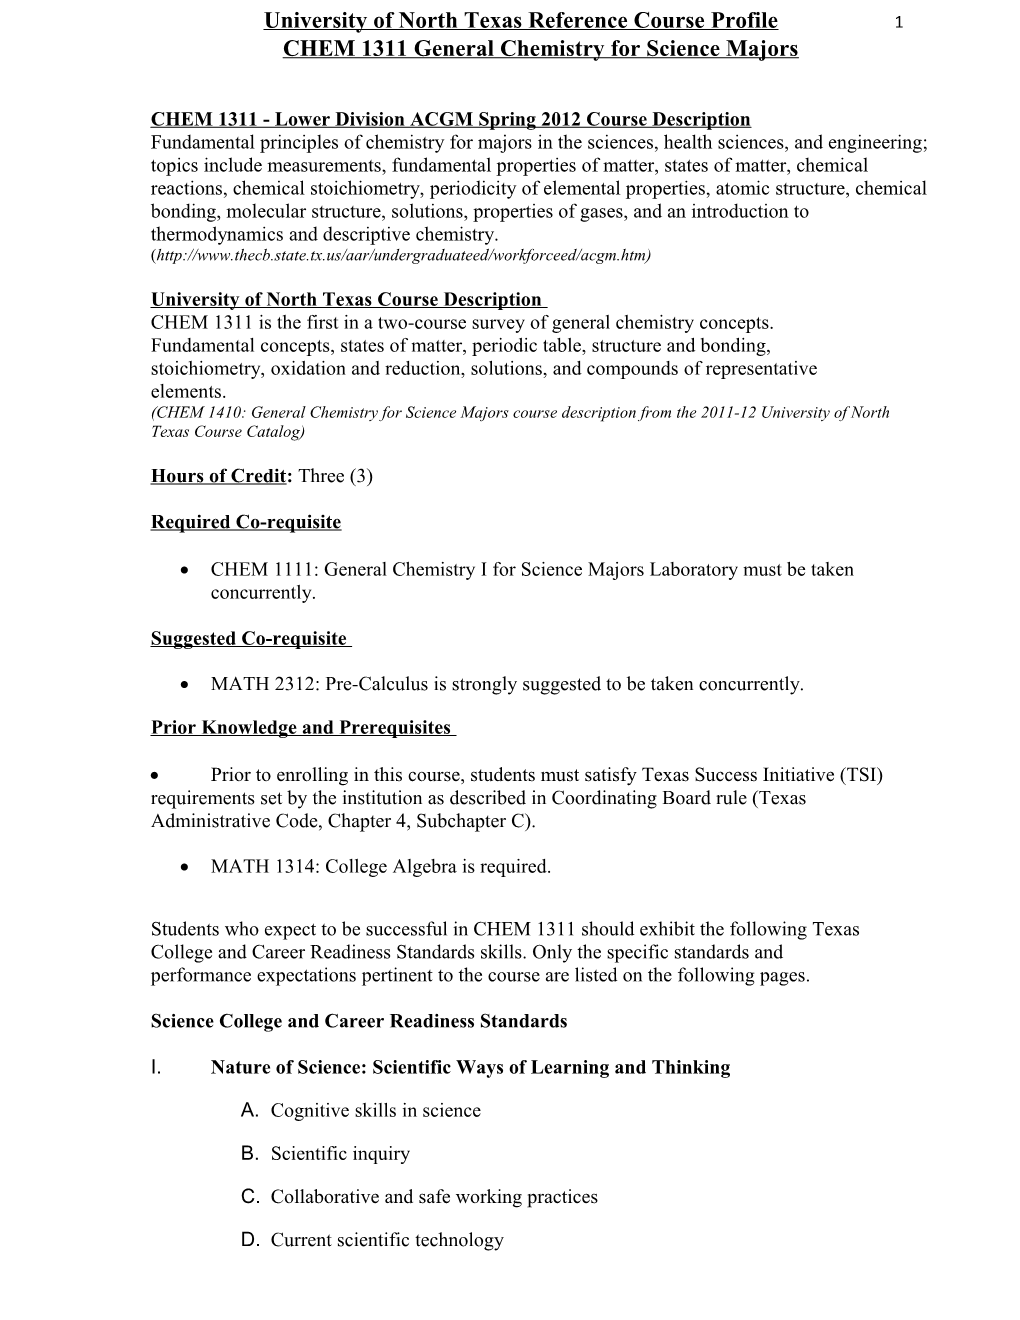 CHEM 1311 - Lower Division ACGM Spring 2012 Course Description